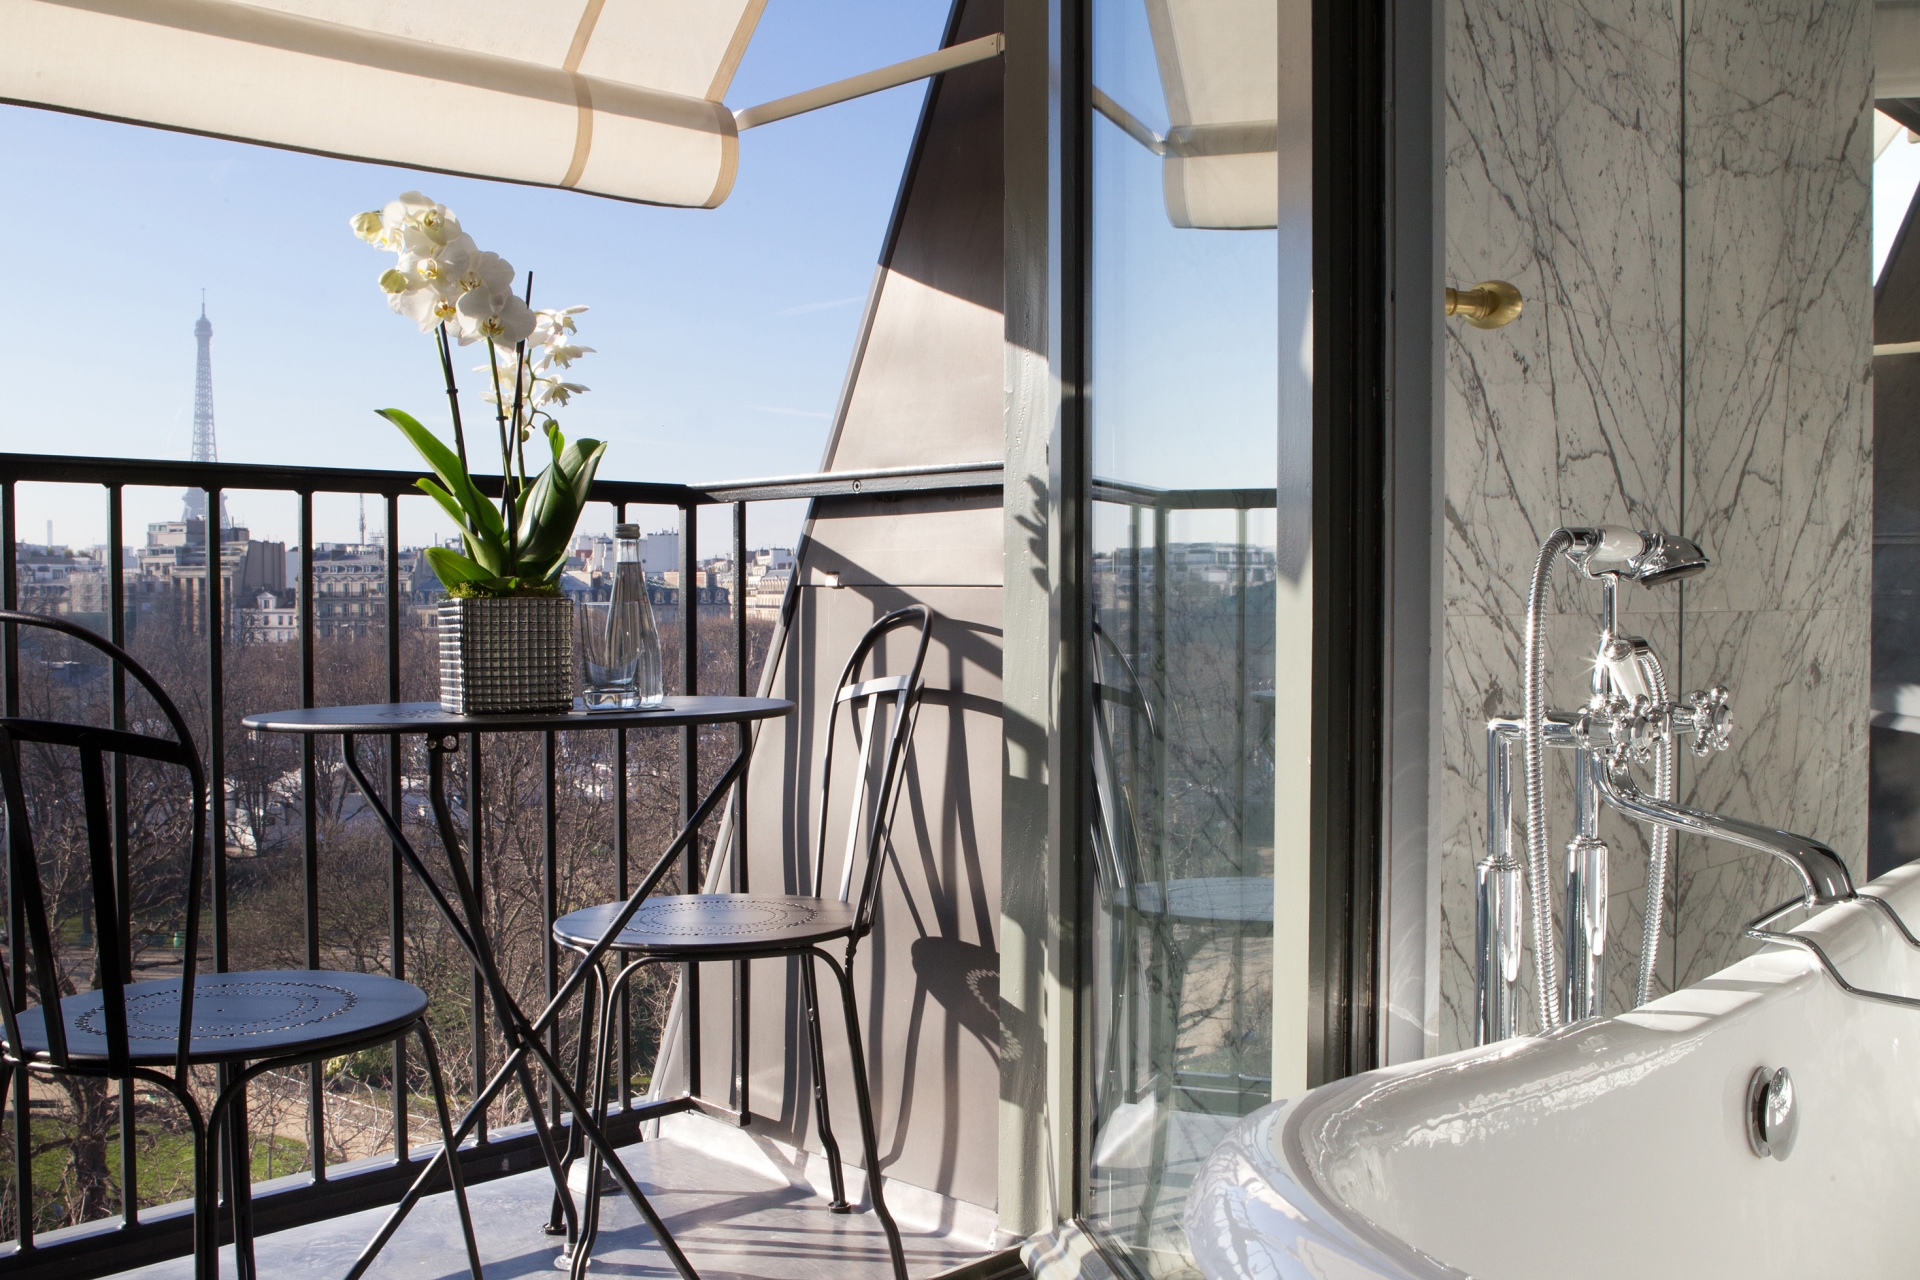 Bathroom with a view - La Reserve Paris